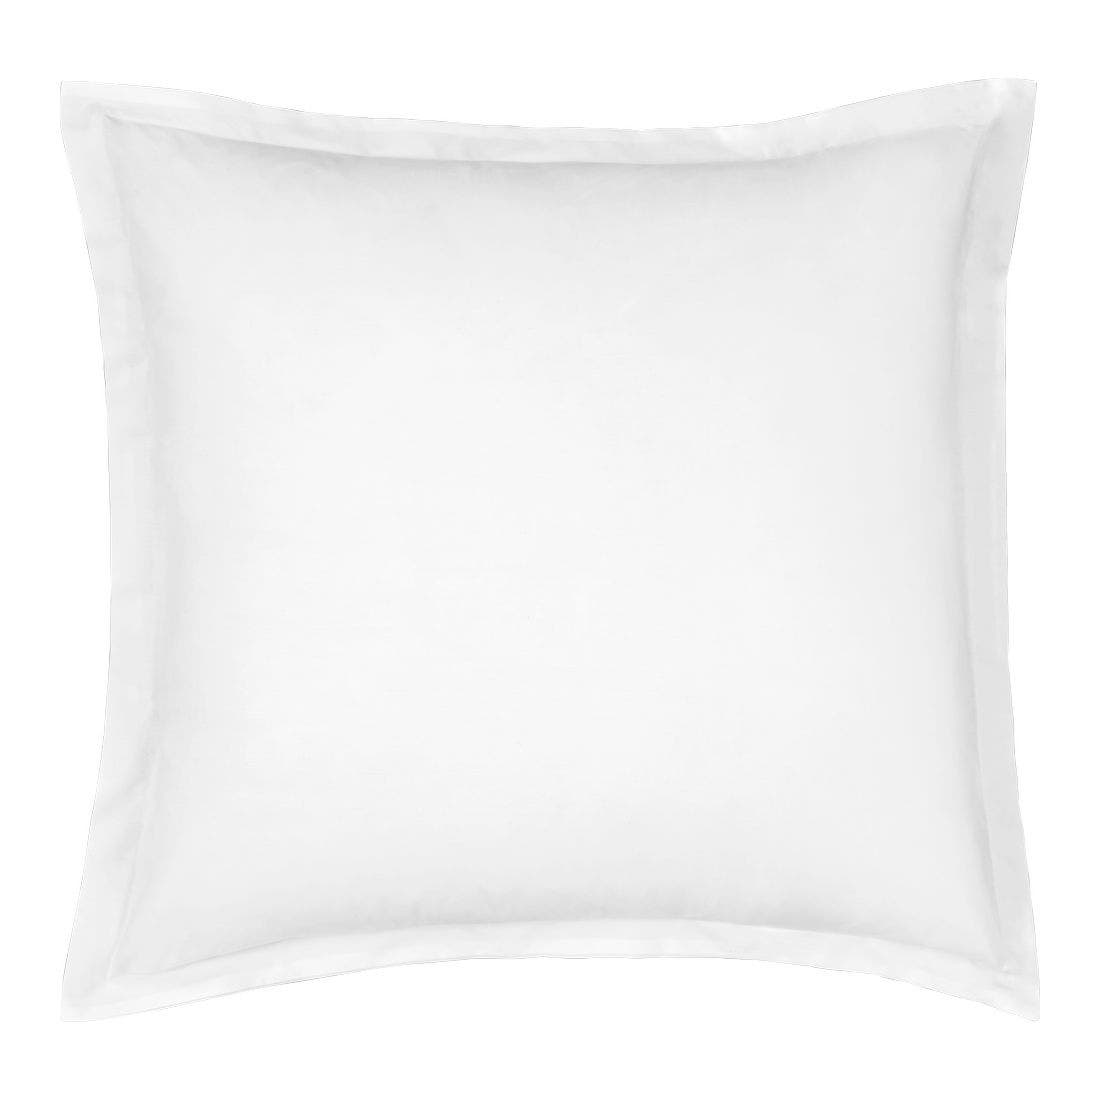 25021264-percale-ll-home-decor-pillows-bed-pillows-01